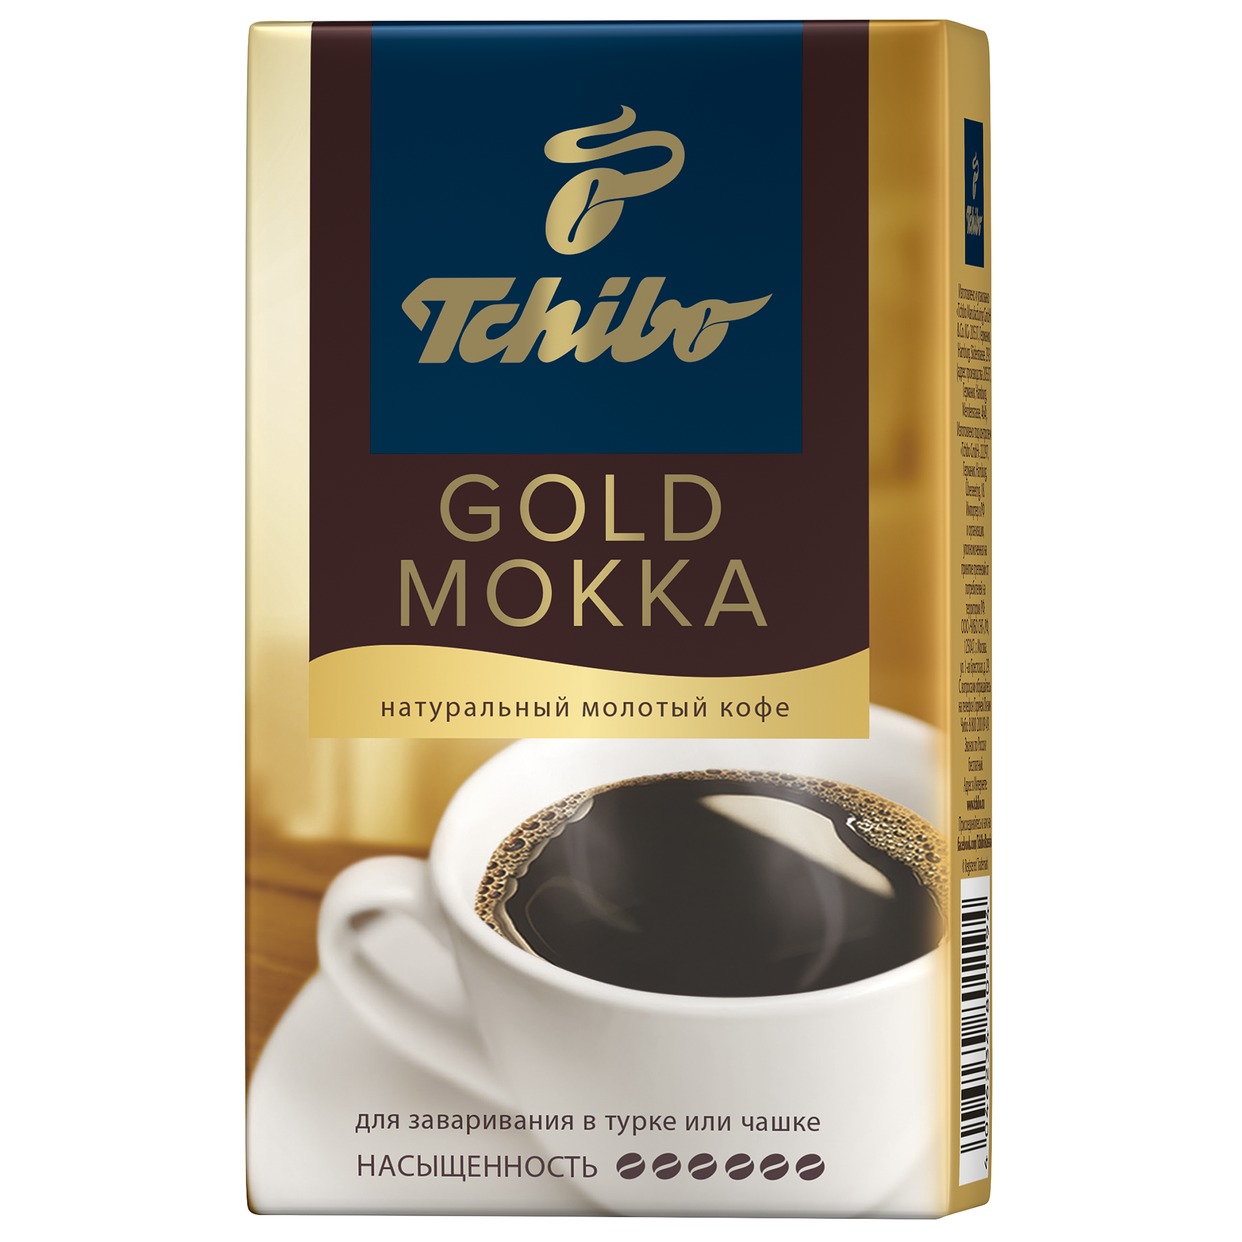 Кофе Tchibo Gold Mokka, молотый, 250 г по акции в Пятерочке